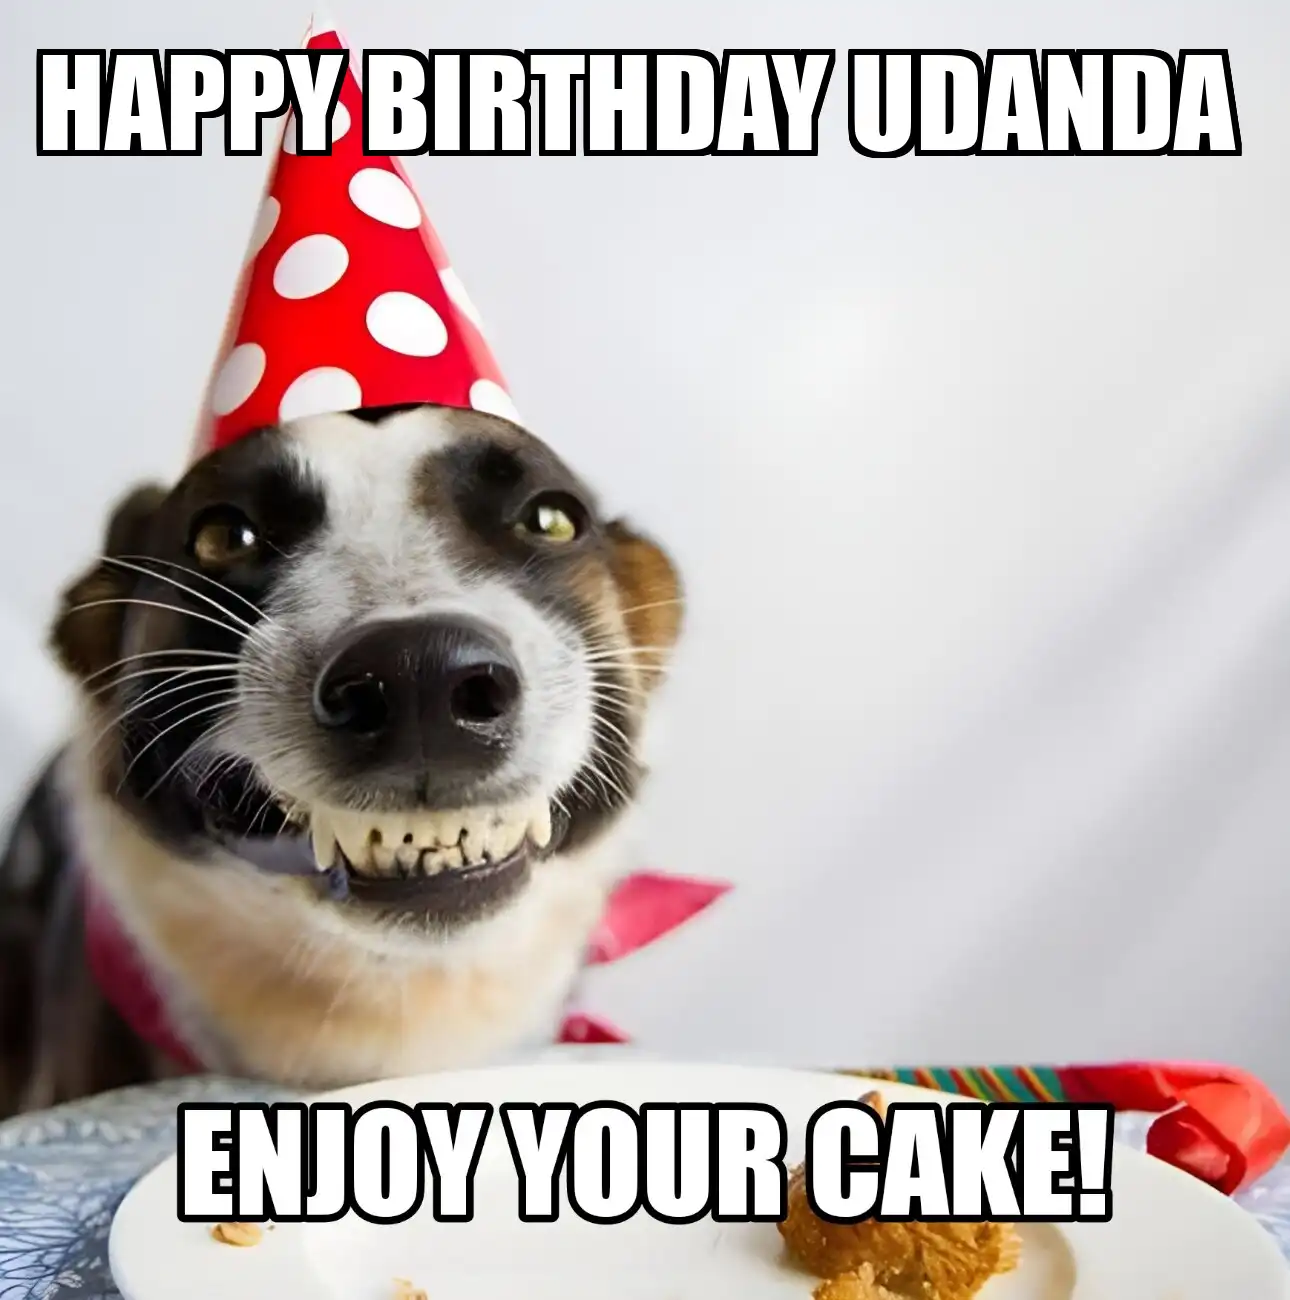 Happy Birthday Udanda Enjoy Your Cake Dog Meme